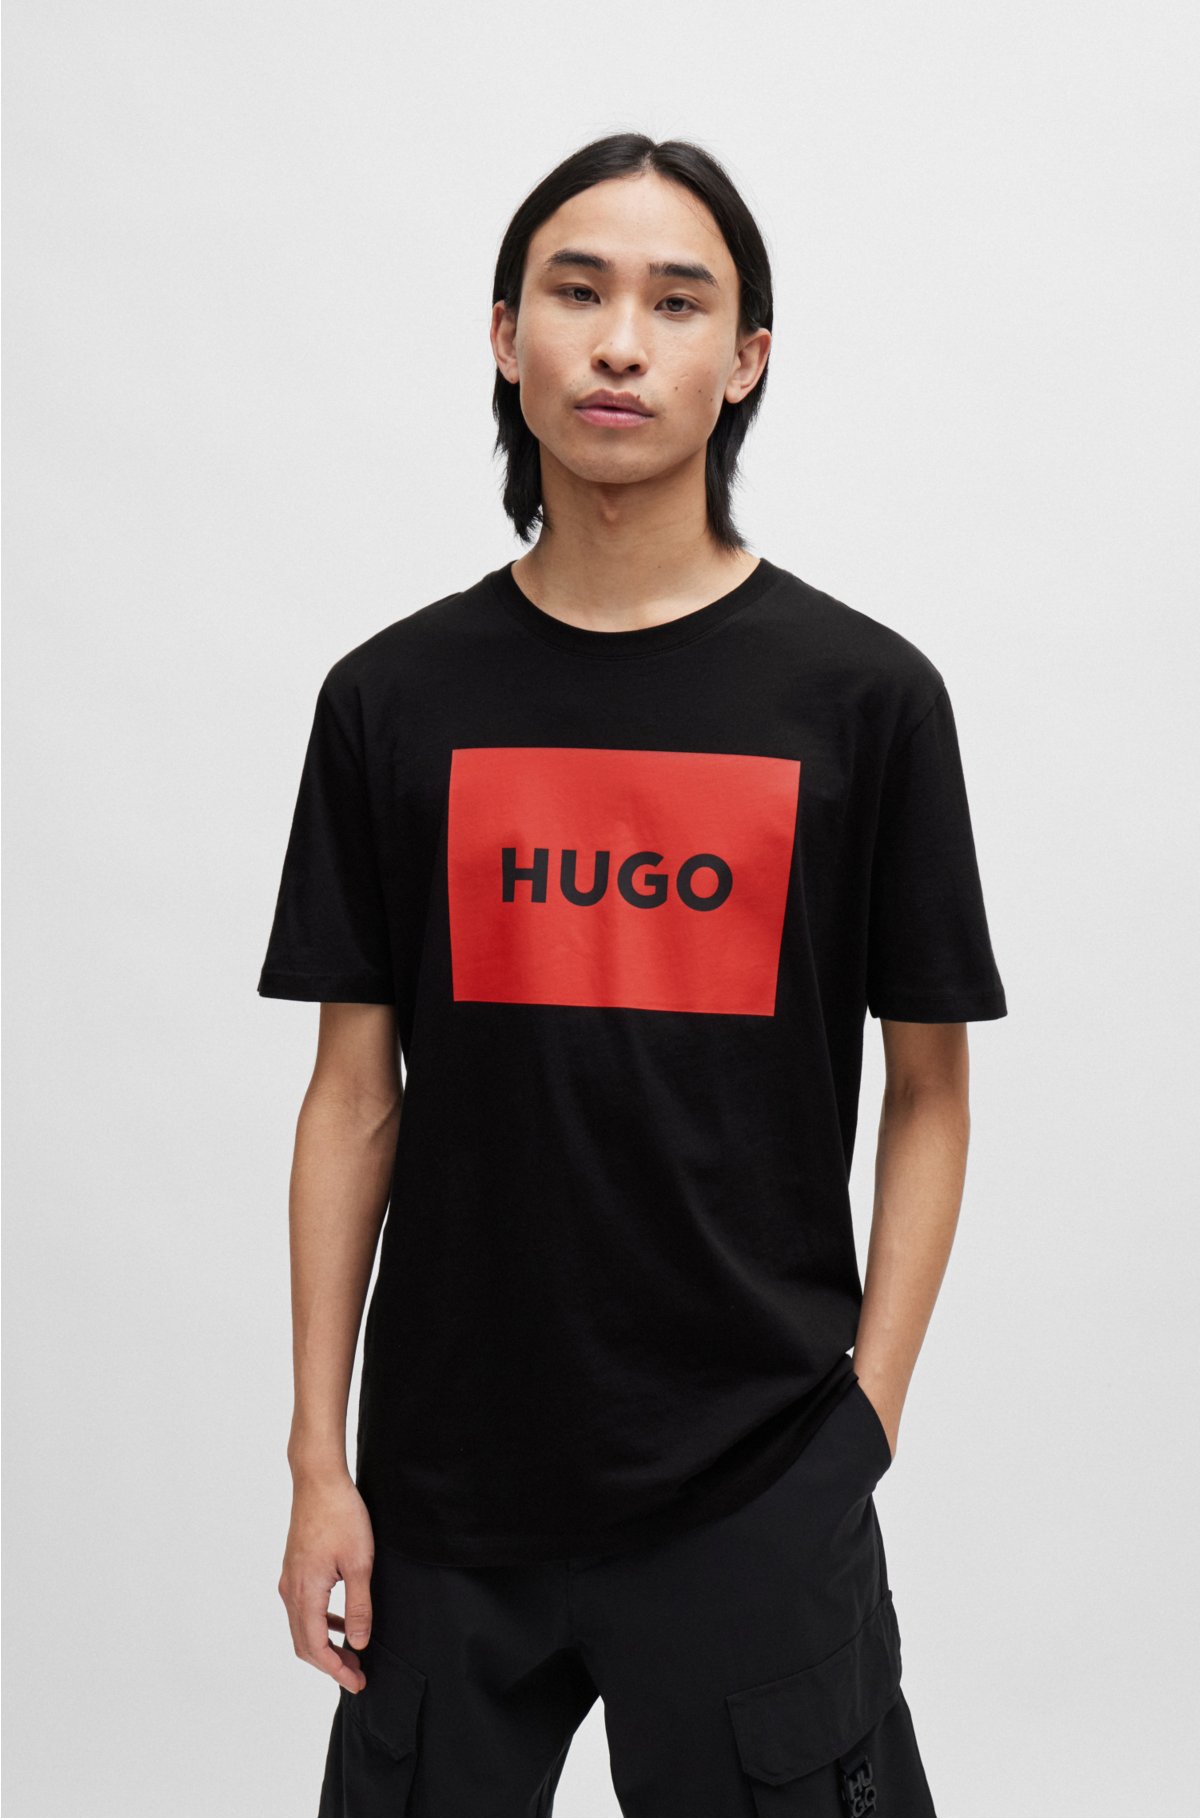 Hugo By Hugo Boss T-Shirt